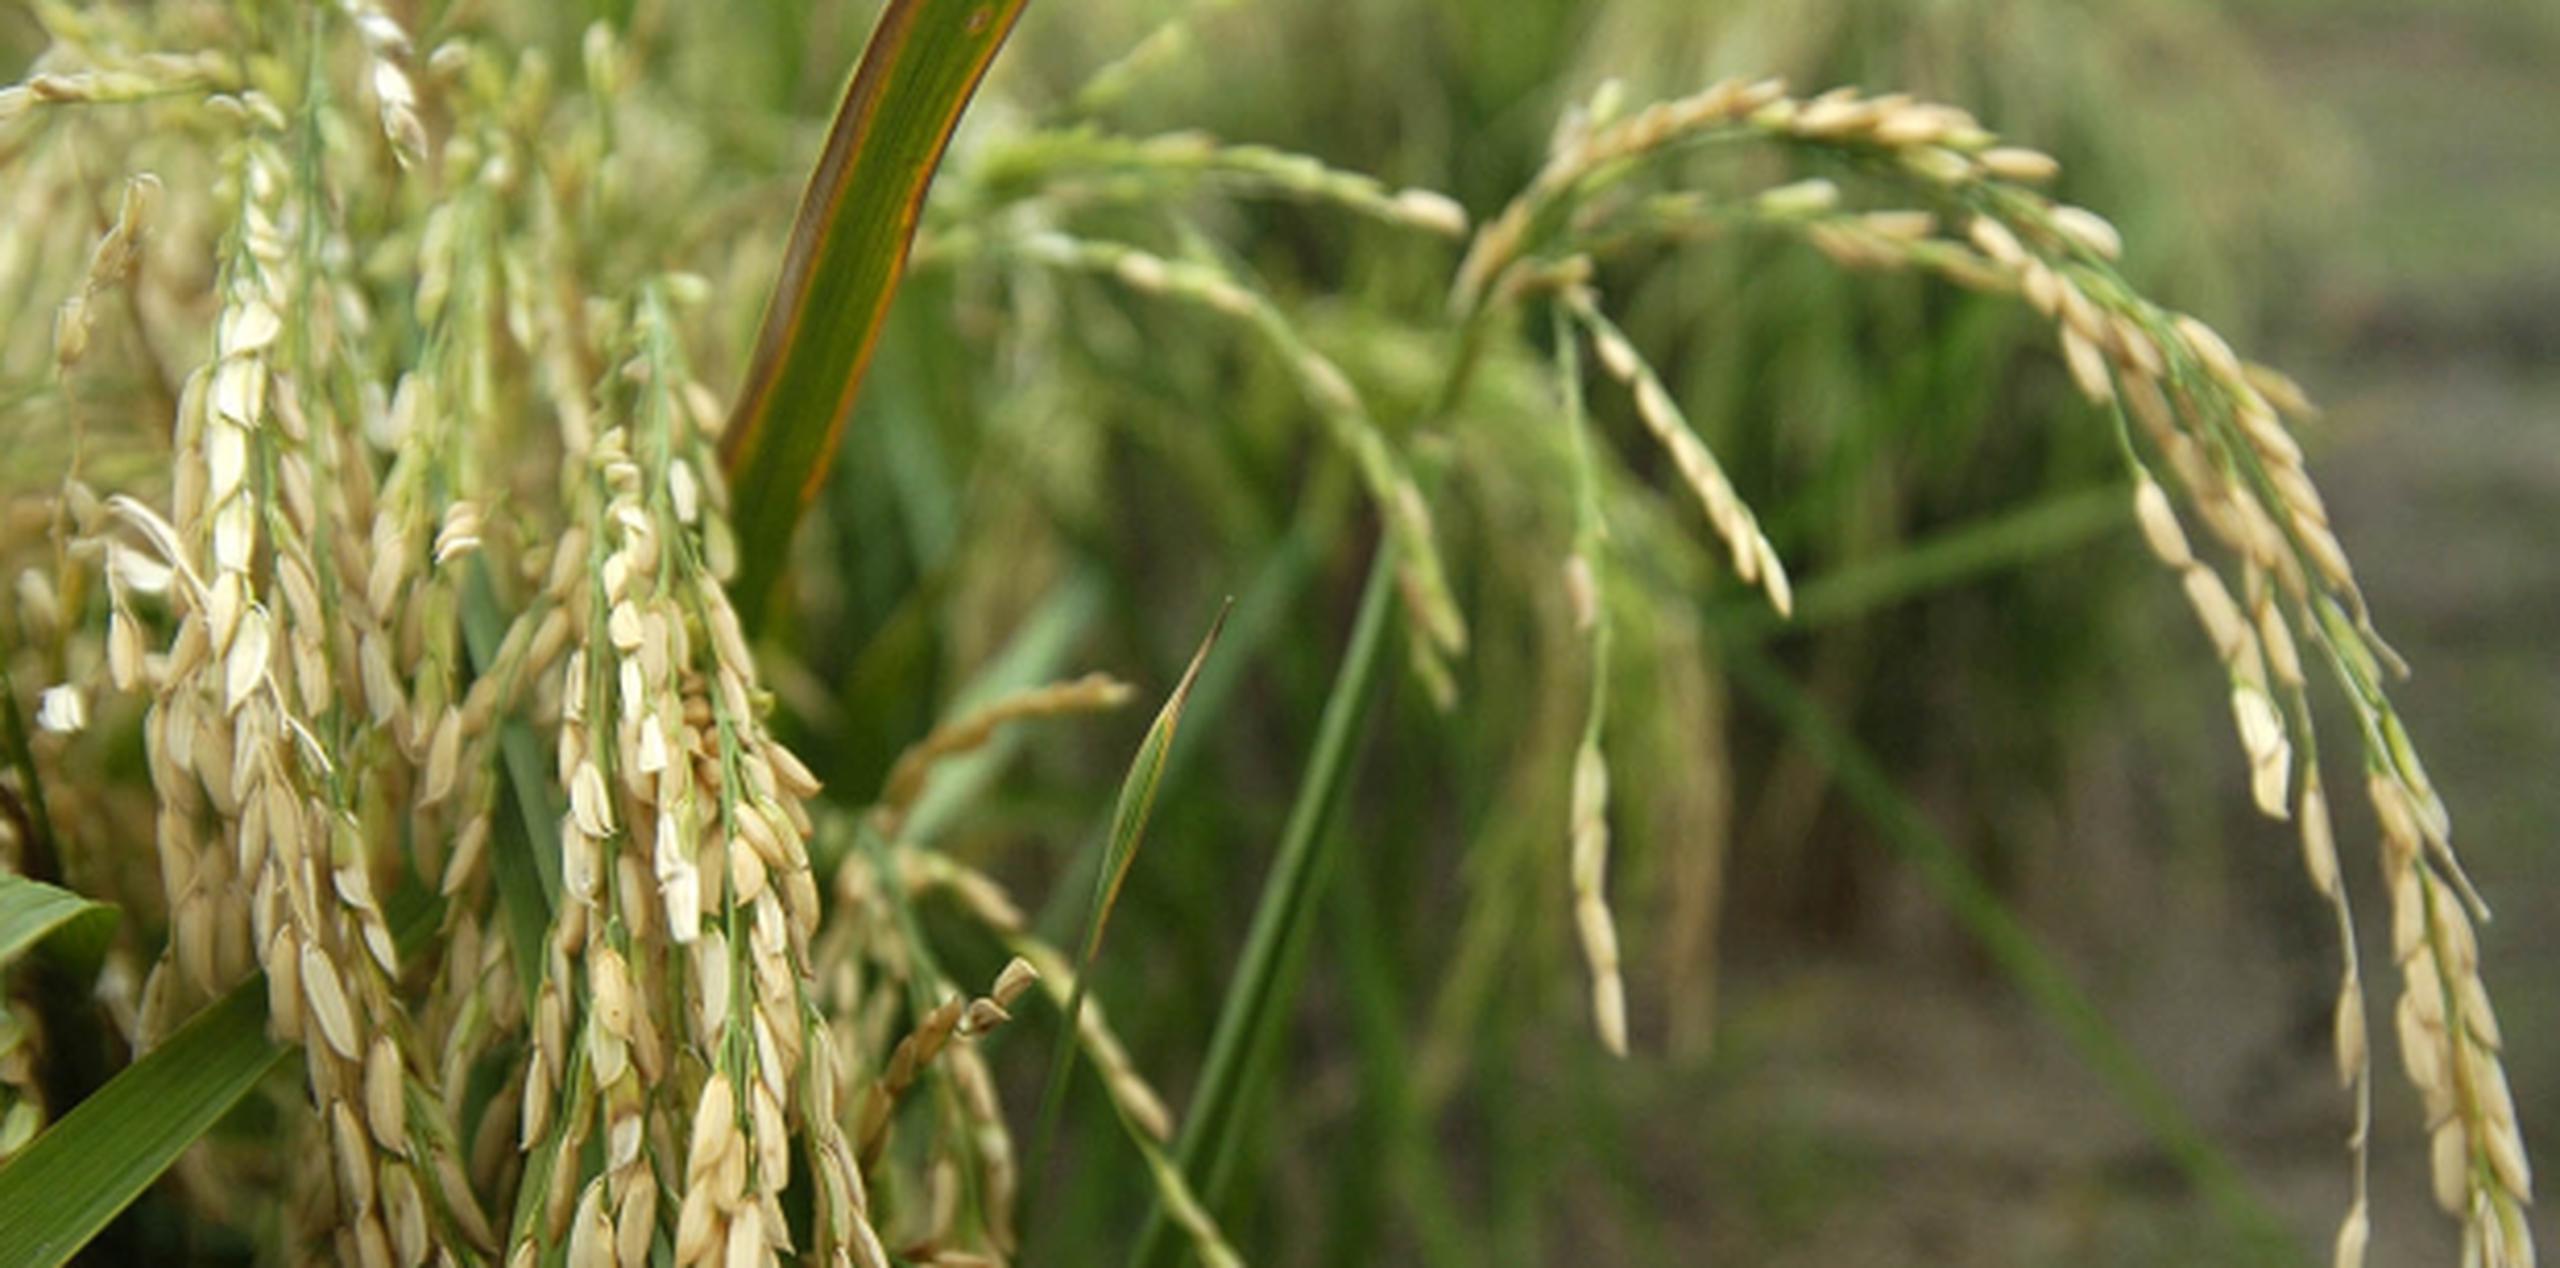 El legislador resaltó el proyecto de siembra de arroz de Lajas como una prioridad, así como el proyecto de ley para reservar el 50% del agua que llega a ese municipio exclusivamente para la agricultura. (Archivo)